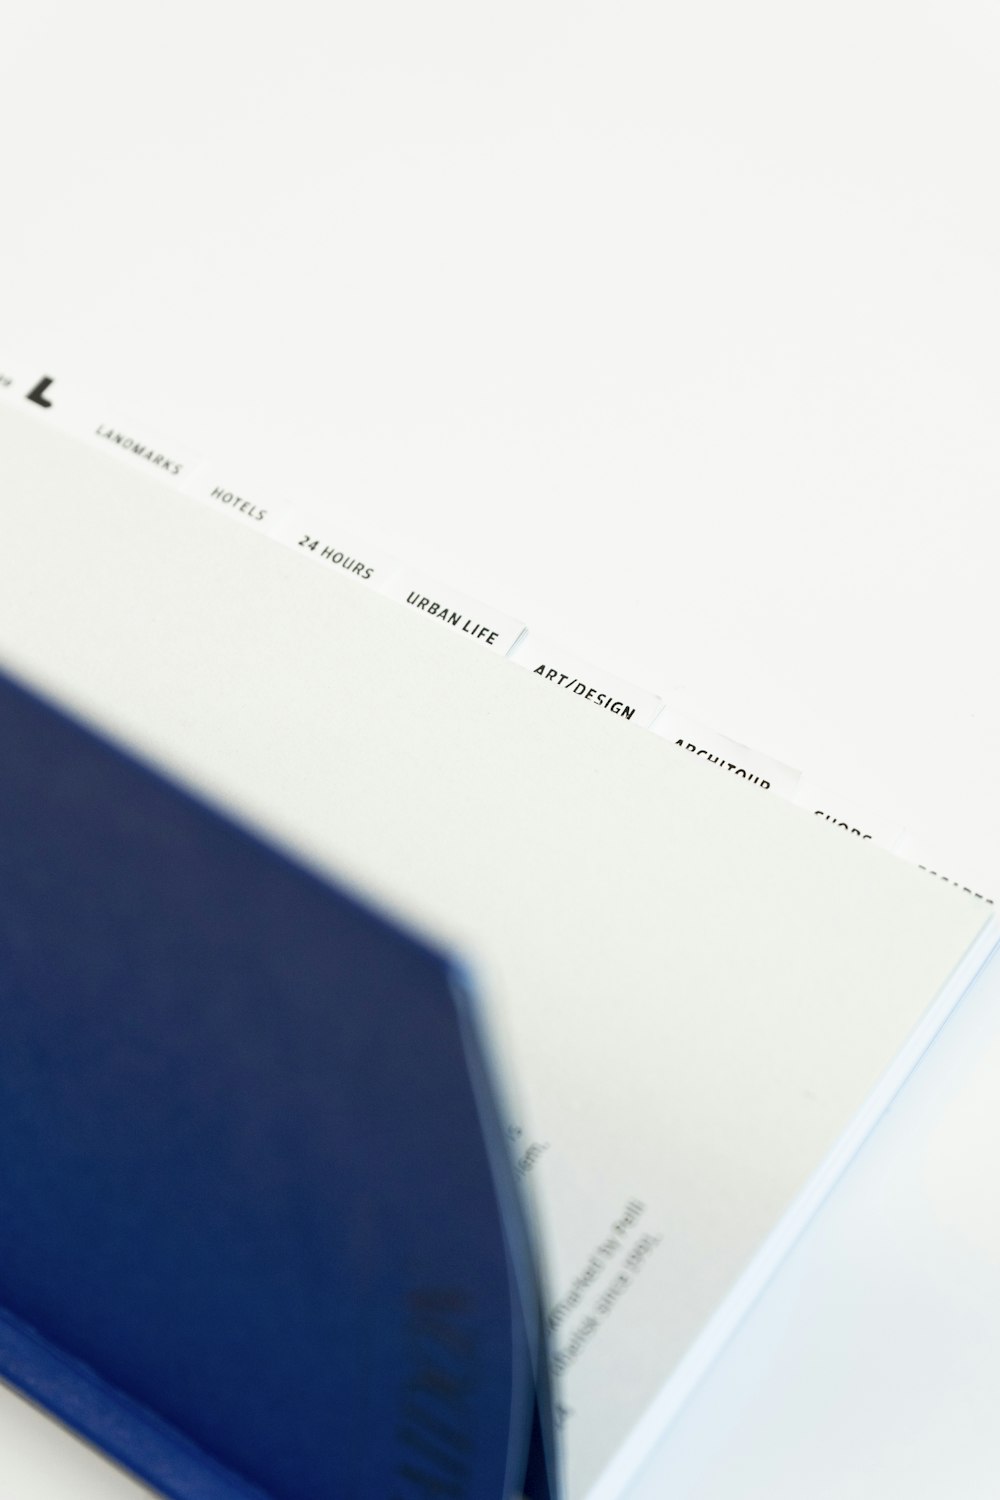 Un primer plano de un libro azul sobre una superficie blanca